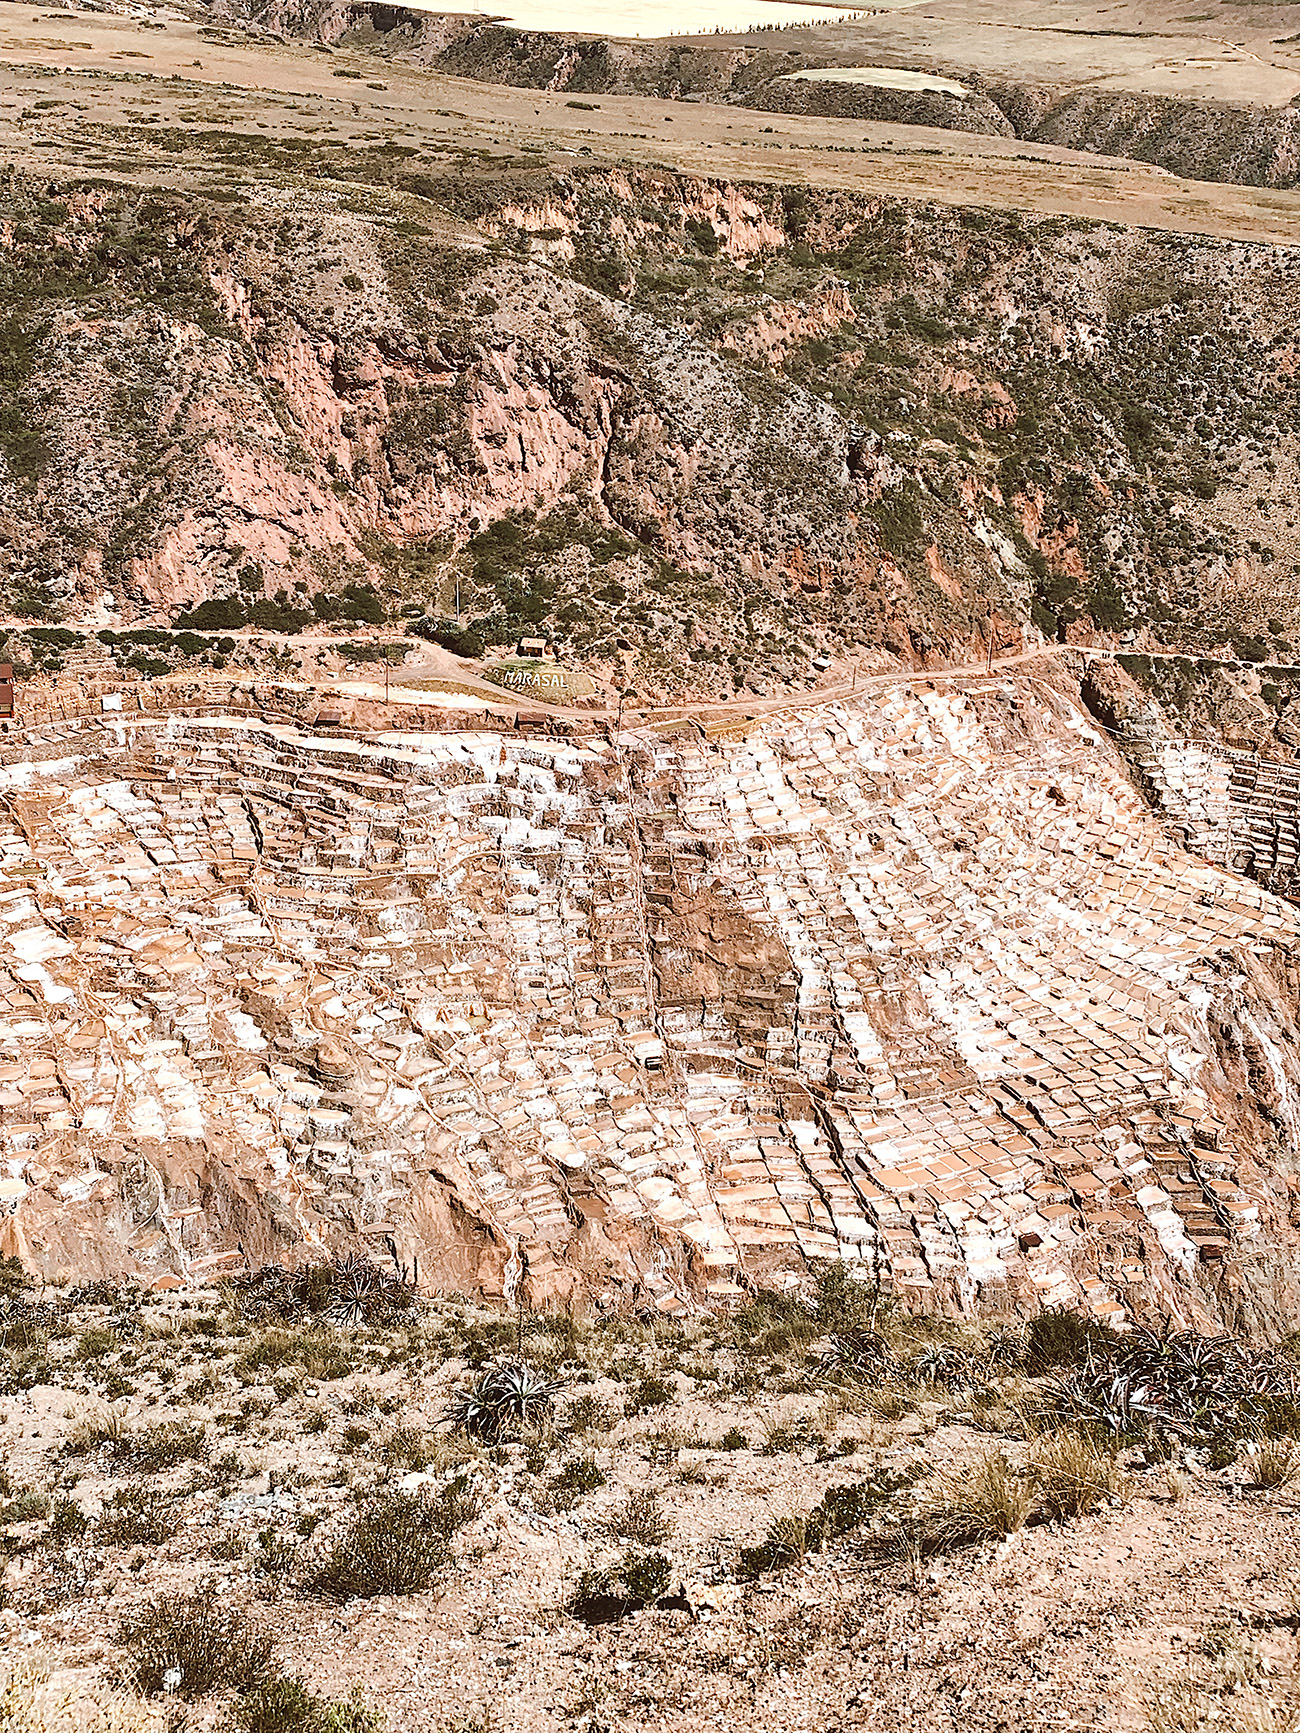 Maras Salt Mines in Peru